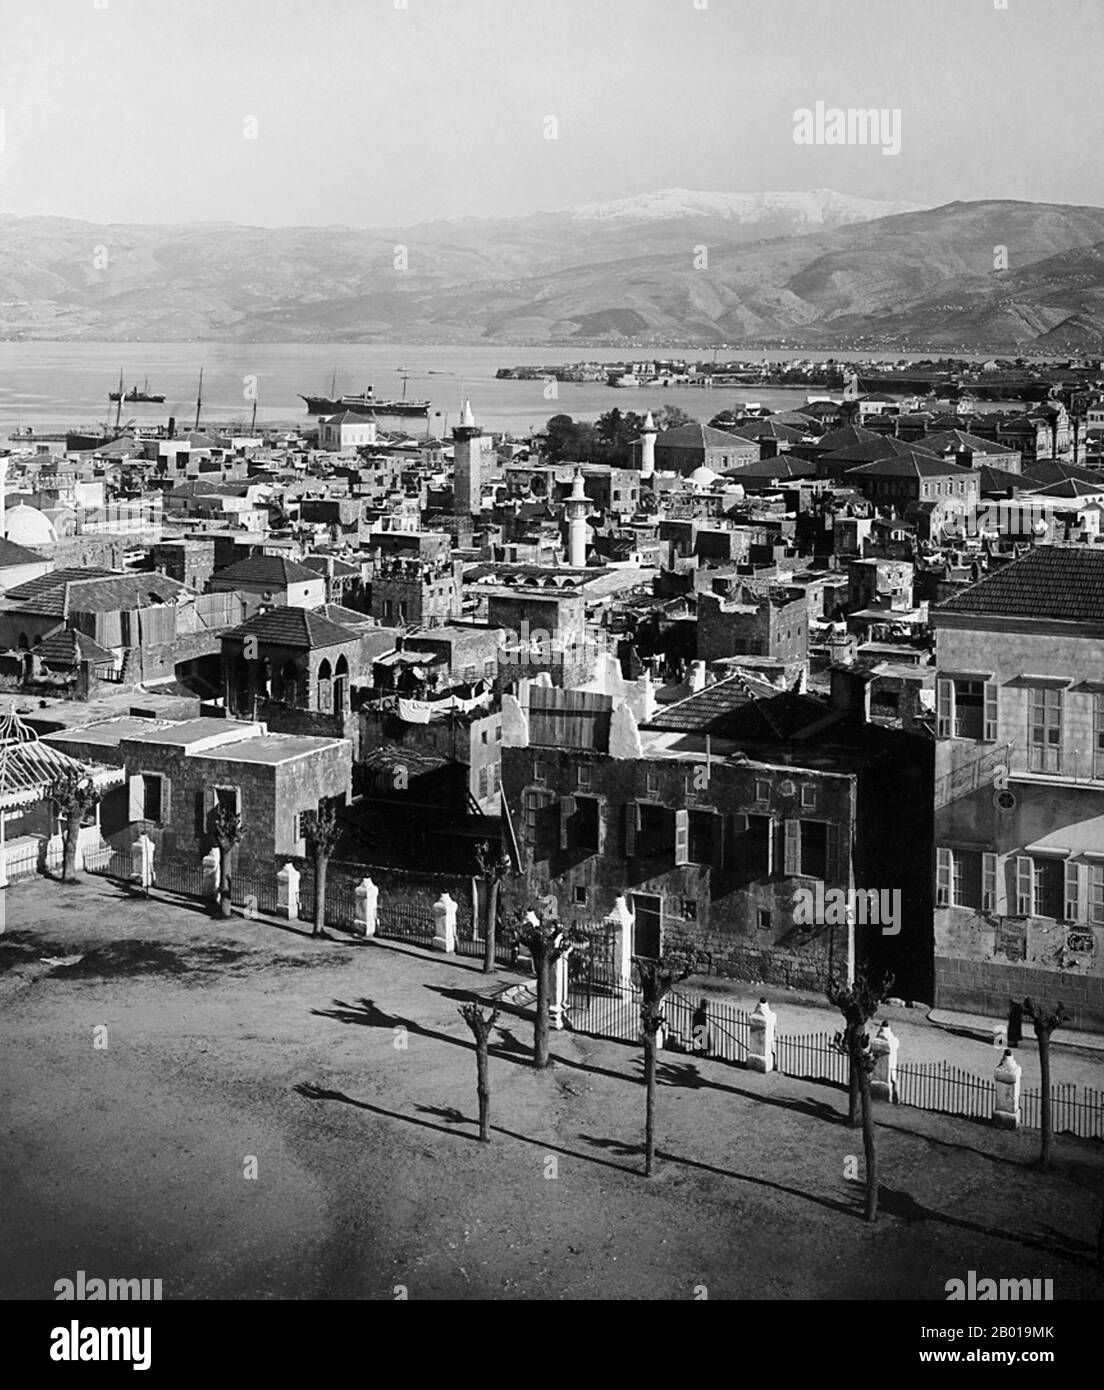 Libanon: Ein Blick über Beirut zur St. George's Bay, c. 1898-1914. Beirut (arabisch: Bayrūt) ist die Hauptstadt und größte Stadt des Libanon mit einer Bevölkerung von etwa 1 Millionen bis mehr als 2 Millionen ab 2007. Es liegt auf einer Halbinsel in der Mitte der libanesischen Küste mit dem Mittelmeer und dient als größter und wichtigster Seehafen des Landes und bildet auch das Stadtgebiet von Beirut, das aus der Stadt und ihren Vororten besteht. Die erste Erwähnung dieser Metropole findet sich in den altägyptischen Tell el Amarna-Briefen aus dem 15.. Jahrhundert v. Chr. Stockfoto